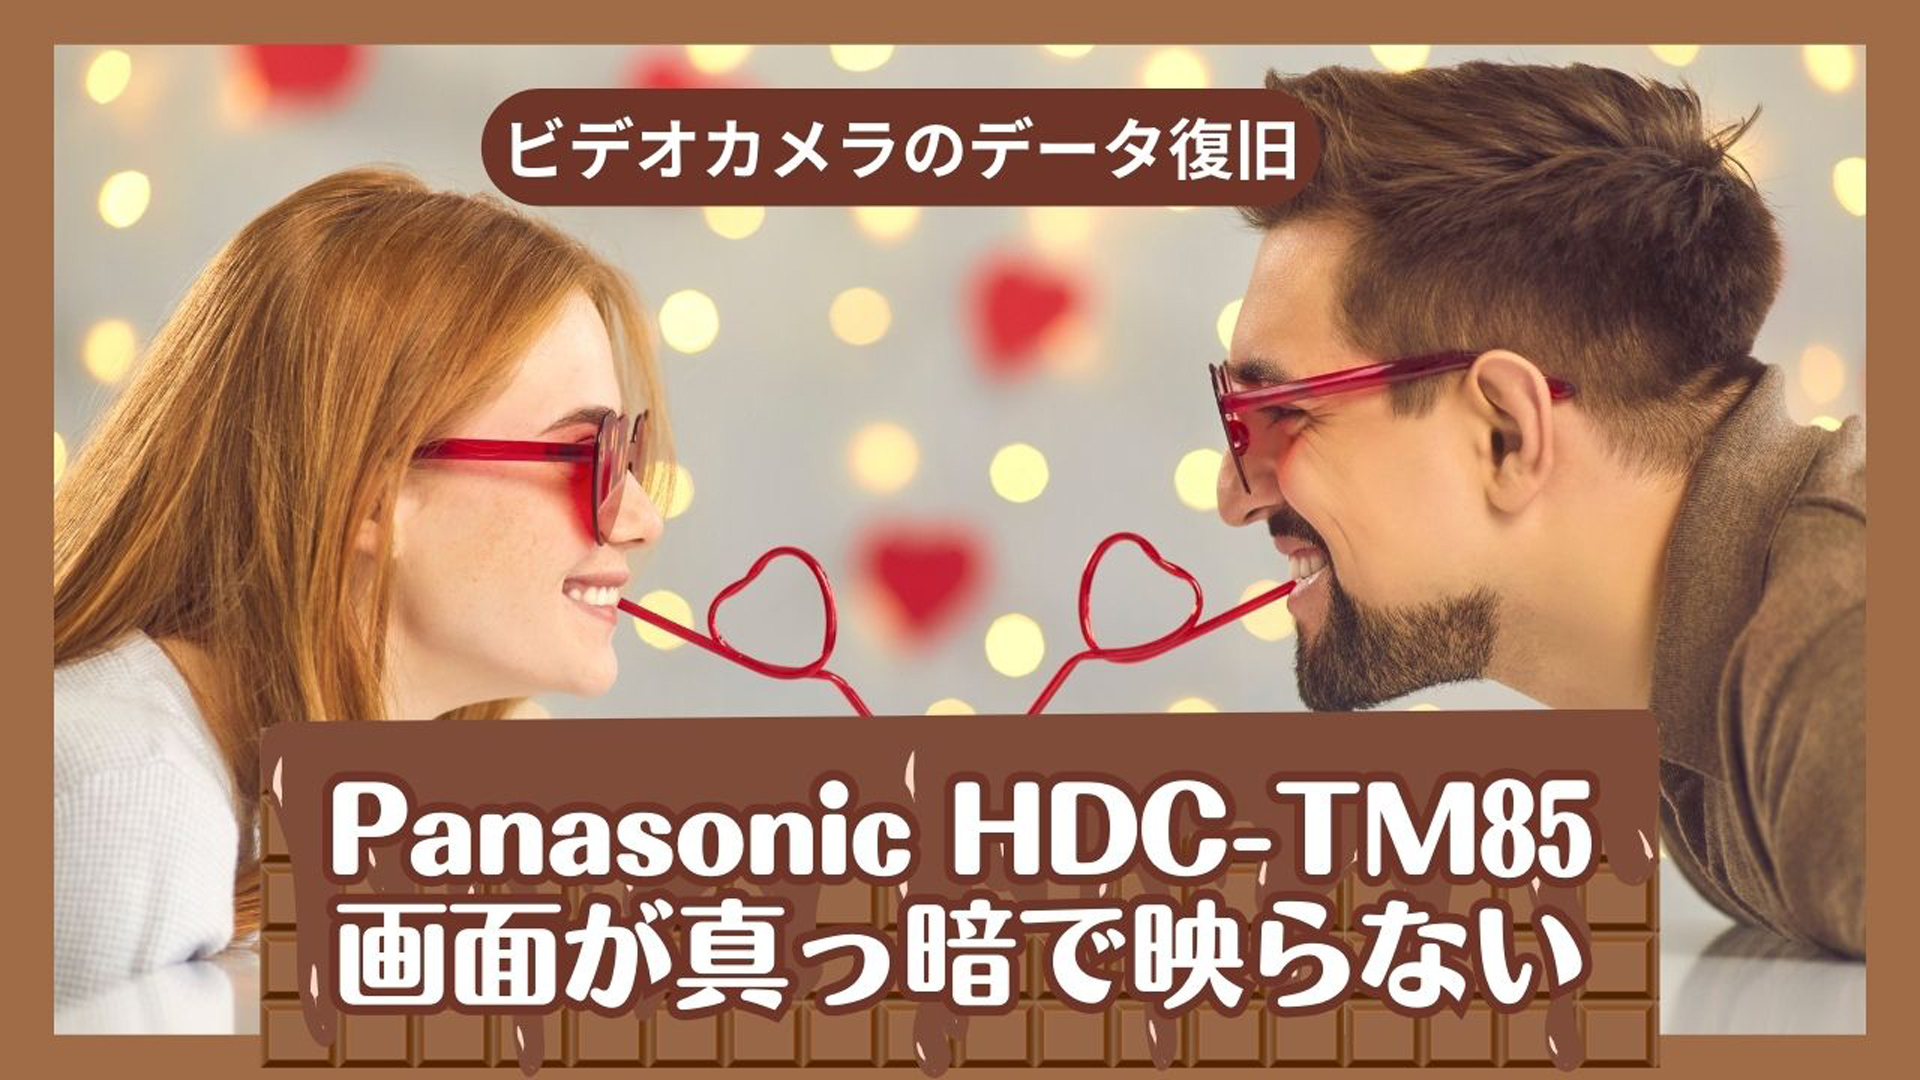 Panasonic HDC-TM85液晶故障からの完全復旧 - 長野県の成功事例